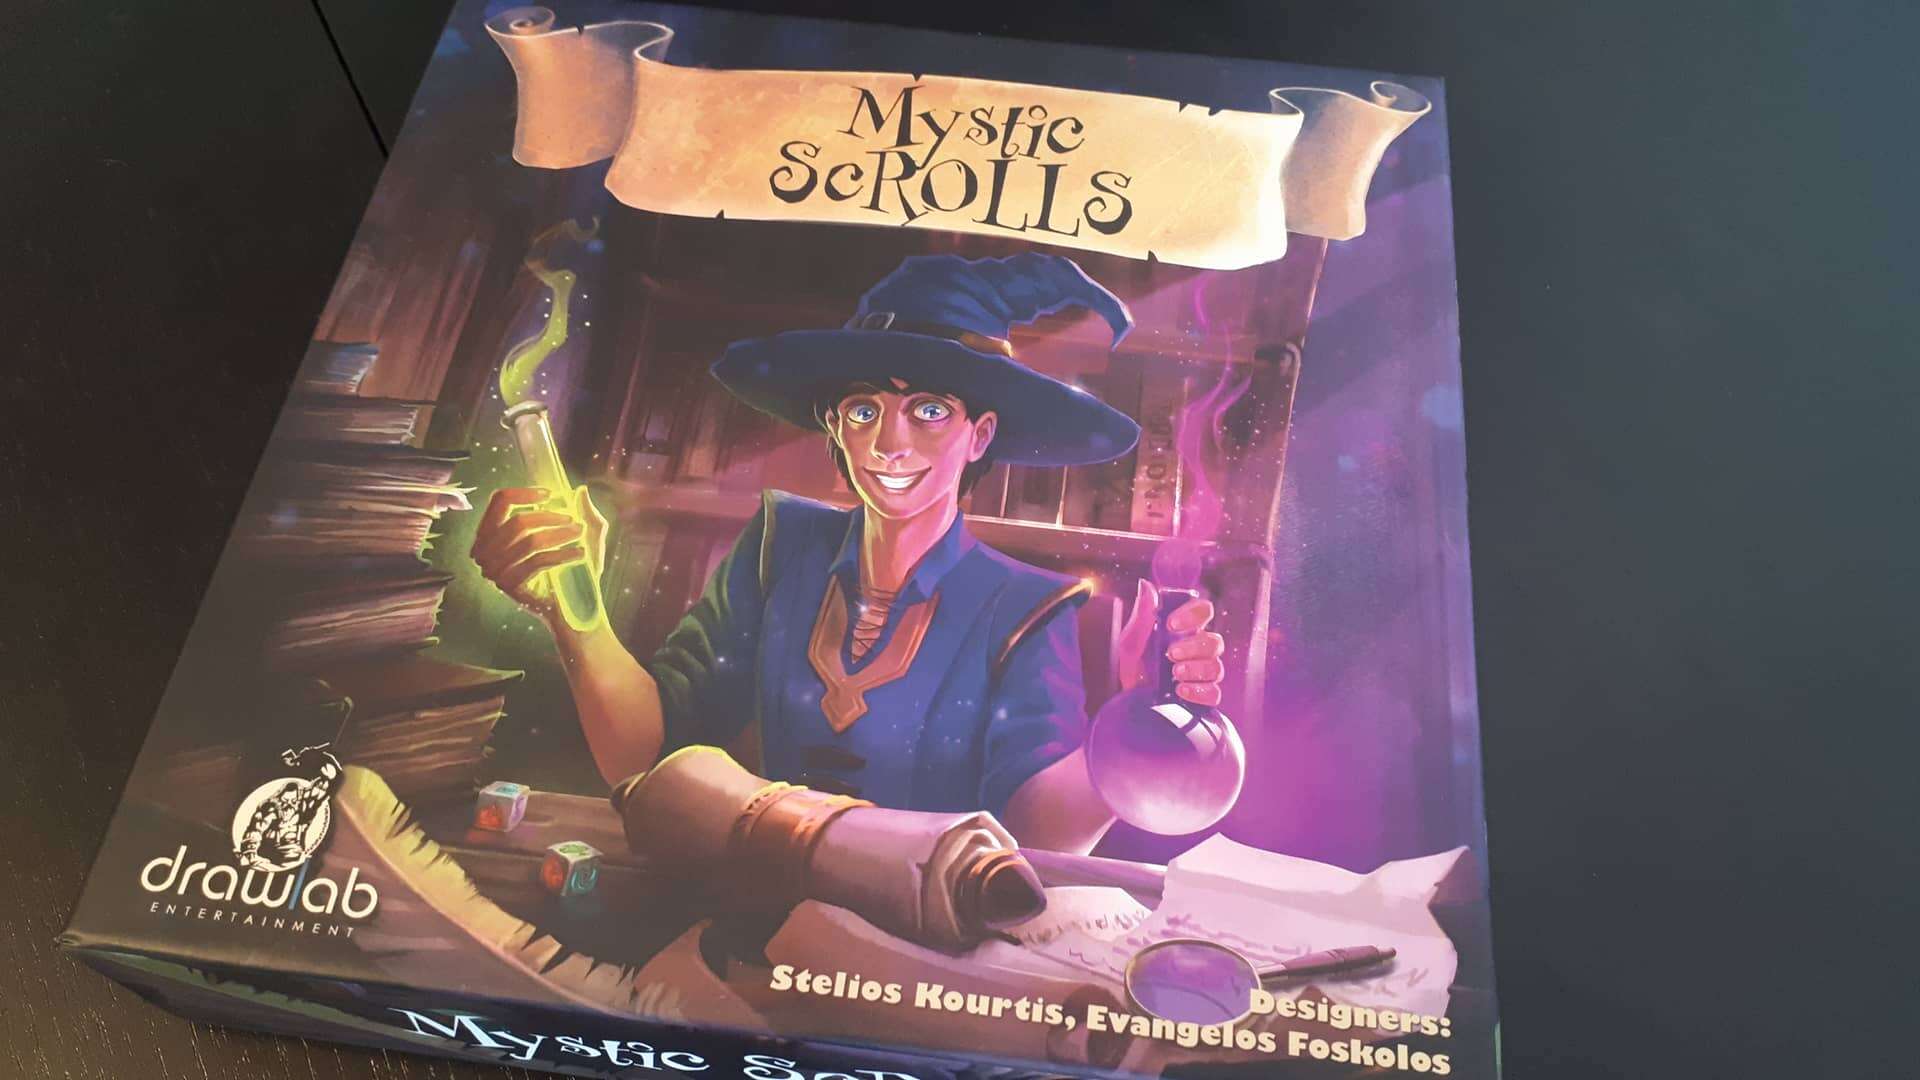 Mystic Scrolls – Безумие и хаос, но работи!